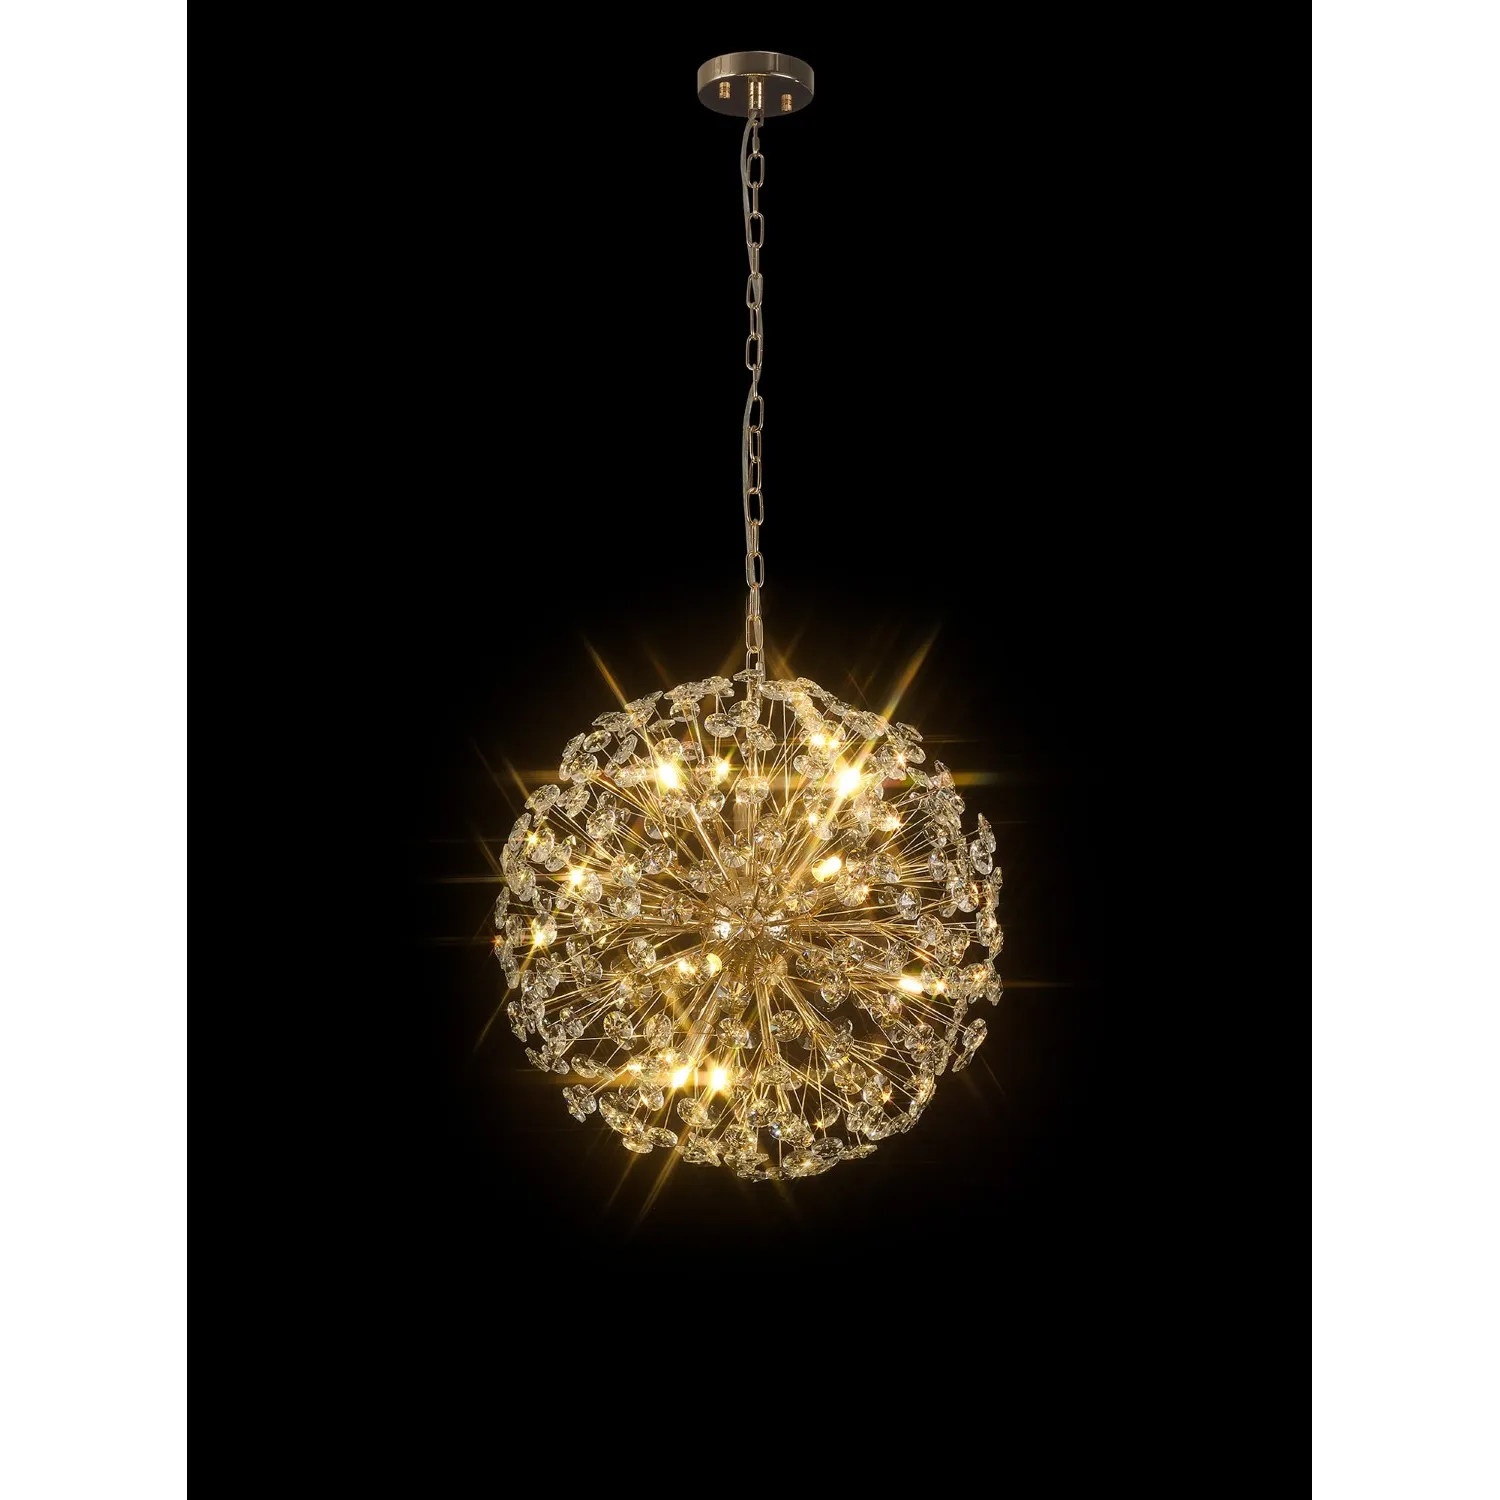 Camden Pendant 50cm Sphere 12 Light G9 French Gold Crystal